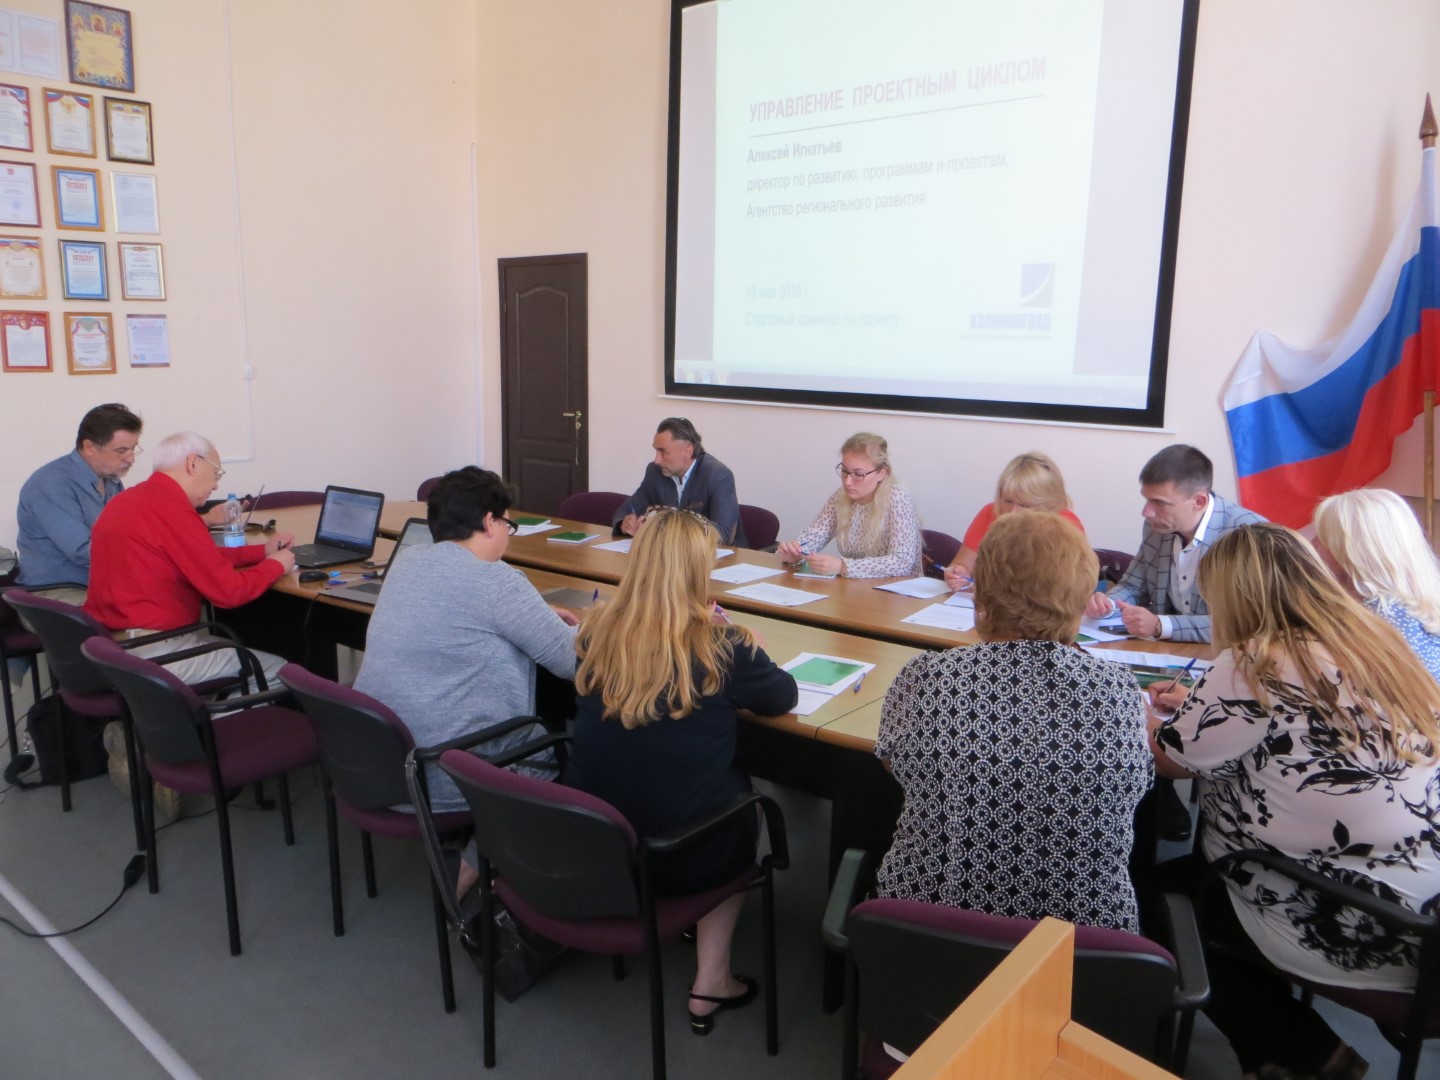 Представители некоммерческого сектора и администрации МО «Зеленоградский городской округ» провели обсуждение возможностей совместной работы в рамках проектного подхода